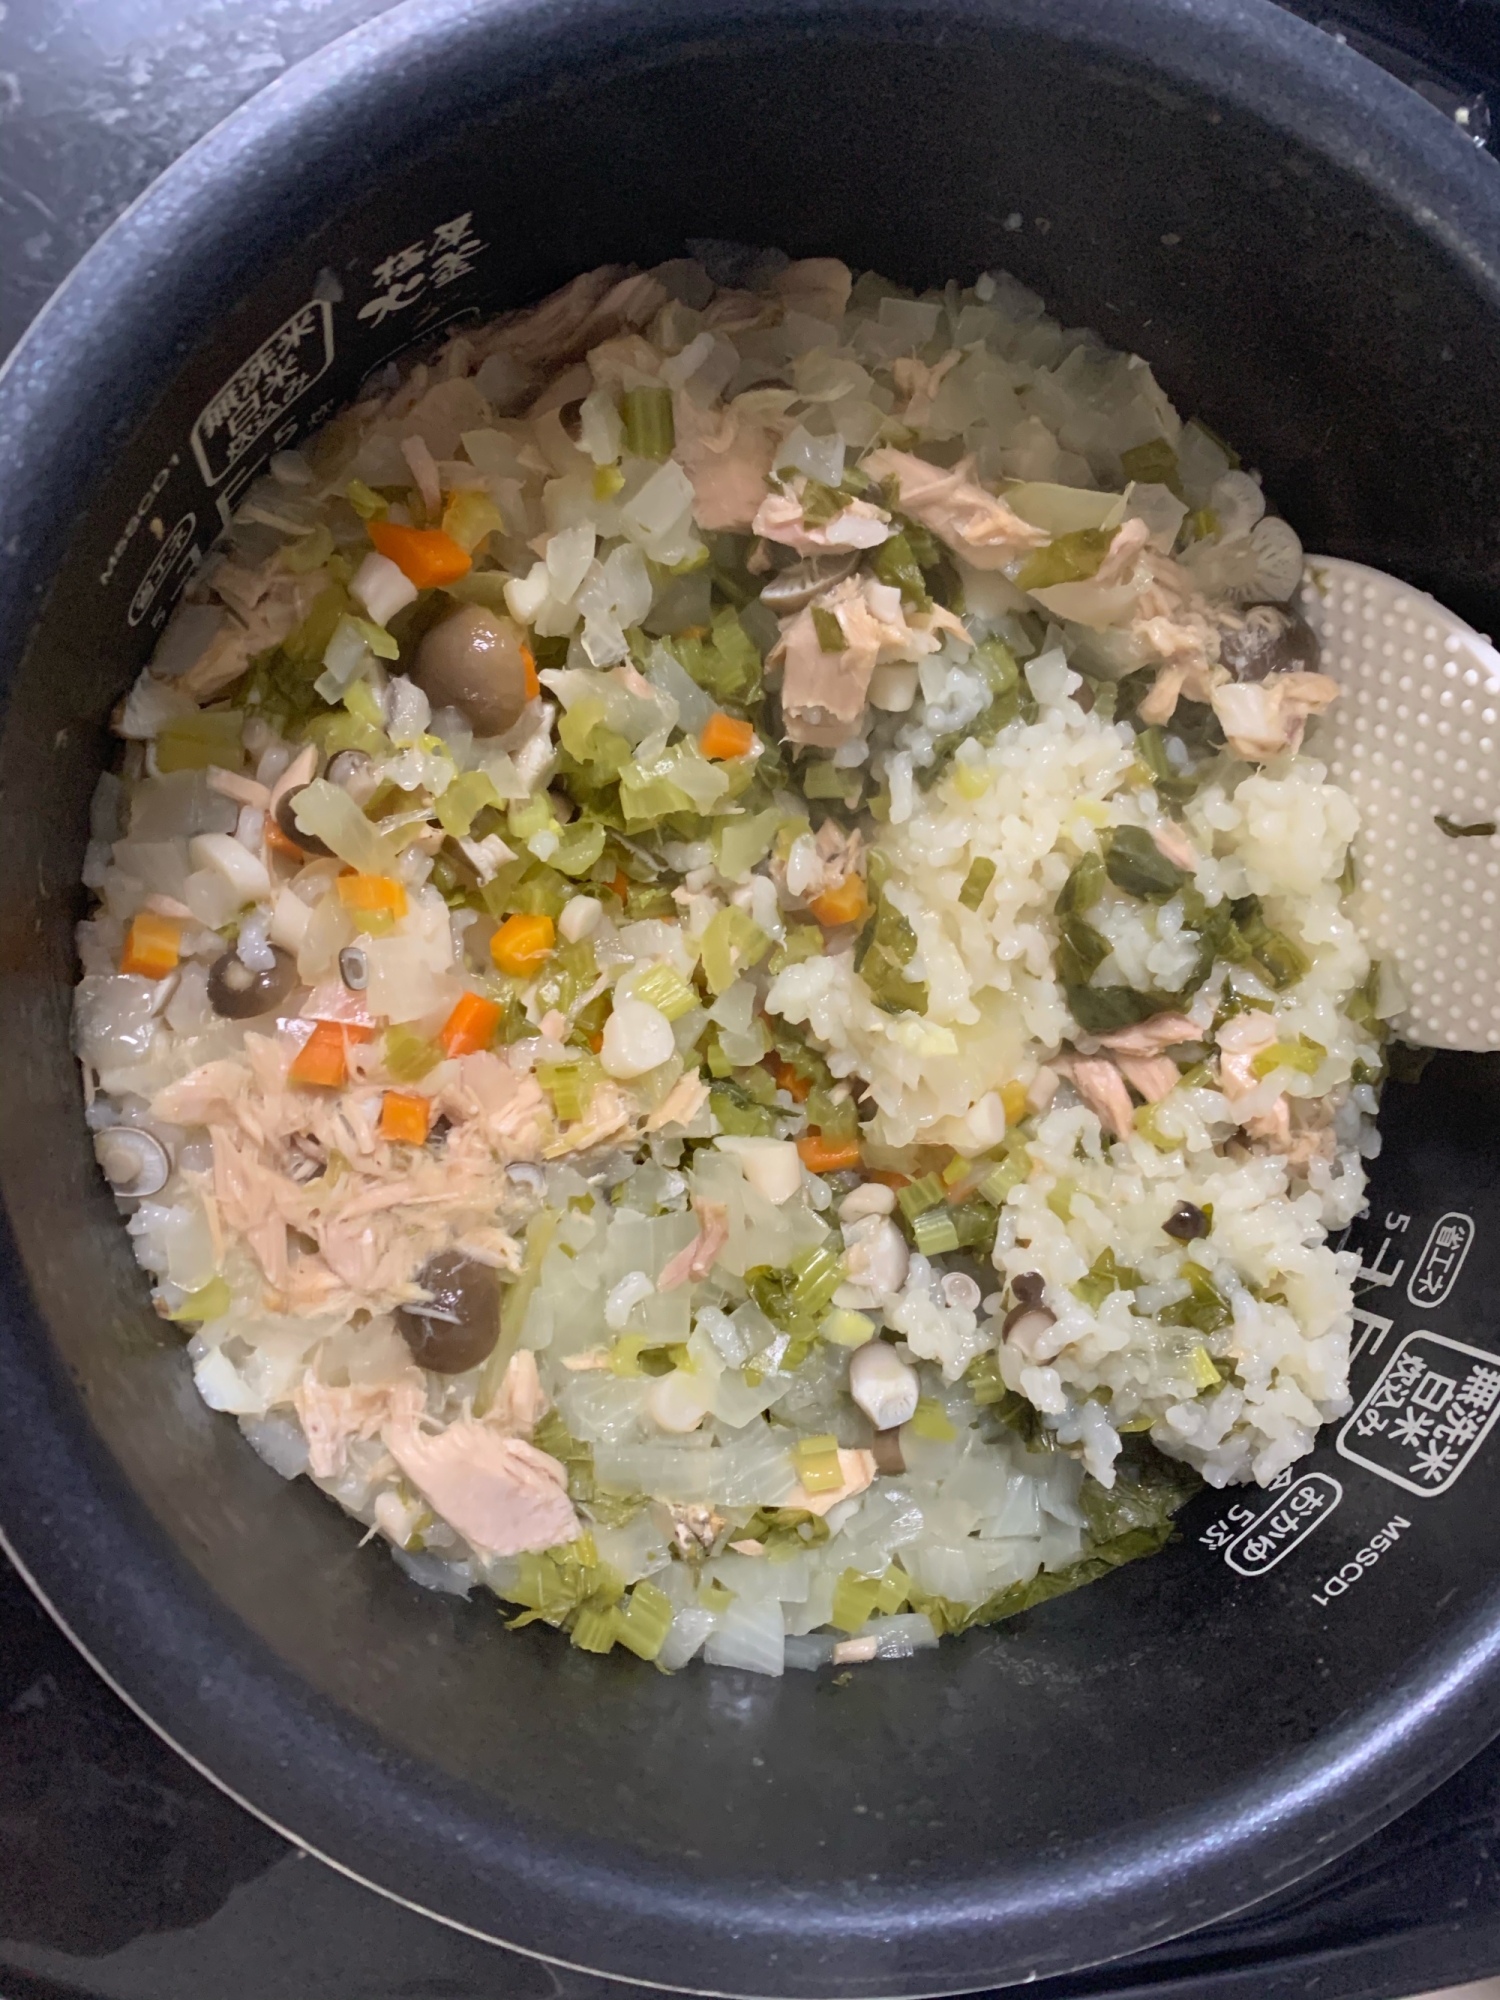 離乳食後期⭐️小松菜とツナの簡単炊き込みご飯